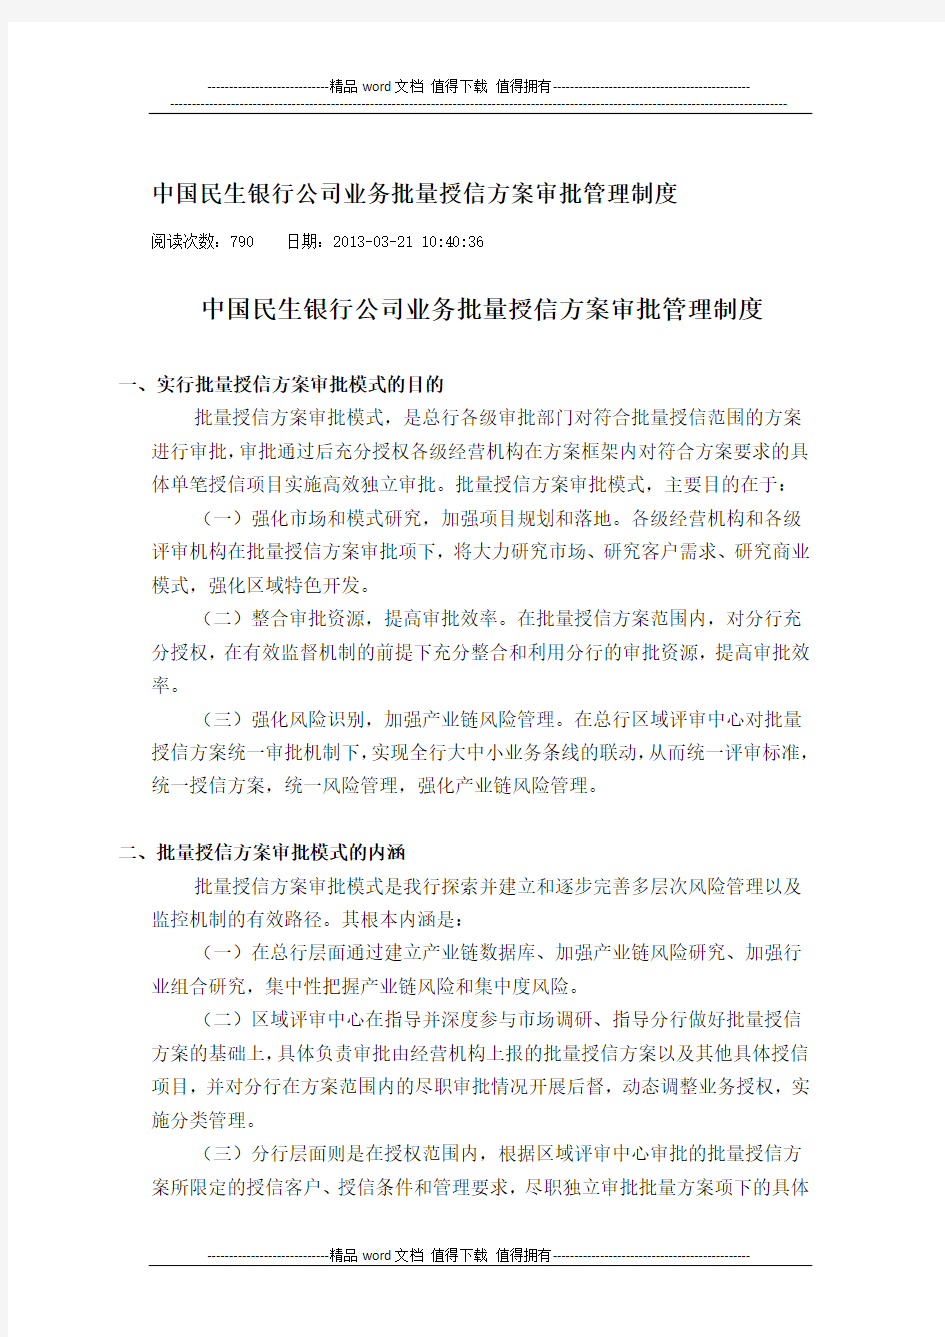 中国民生银行公司业务批量授信方案审批管理制度